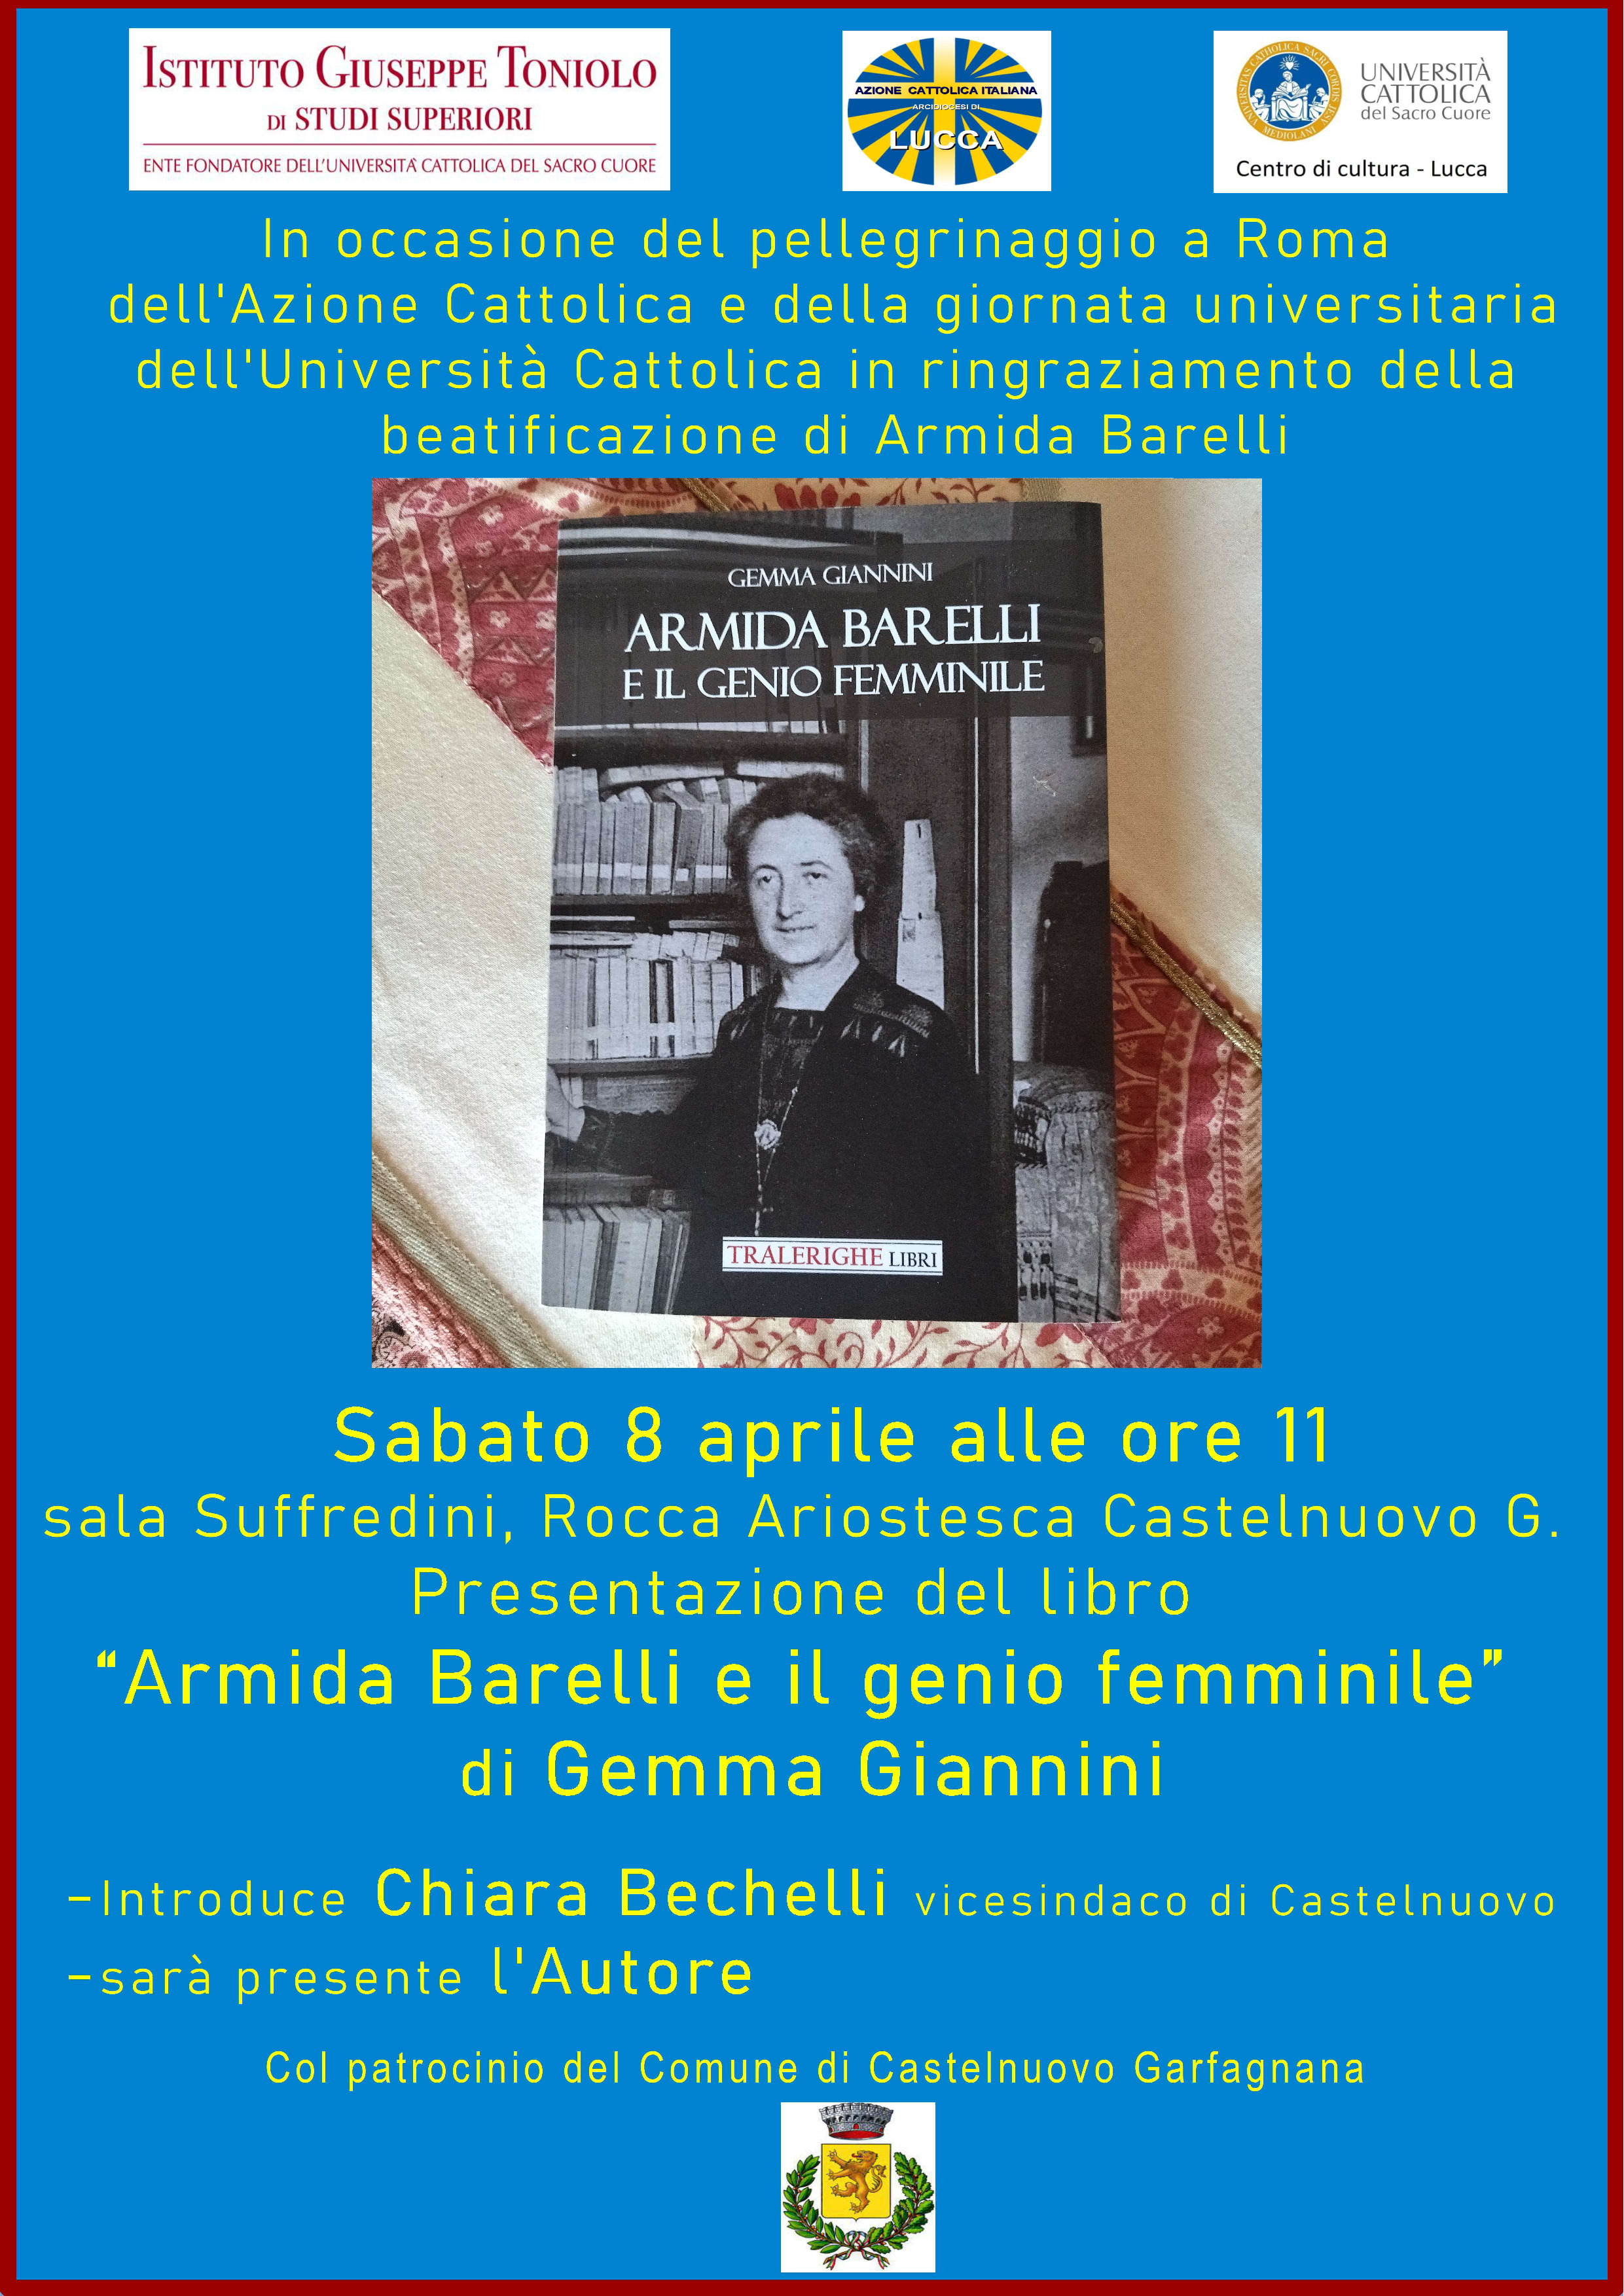 Presesentazione del libro Armida Barelli e il genio femminile